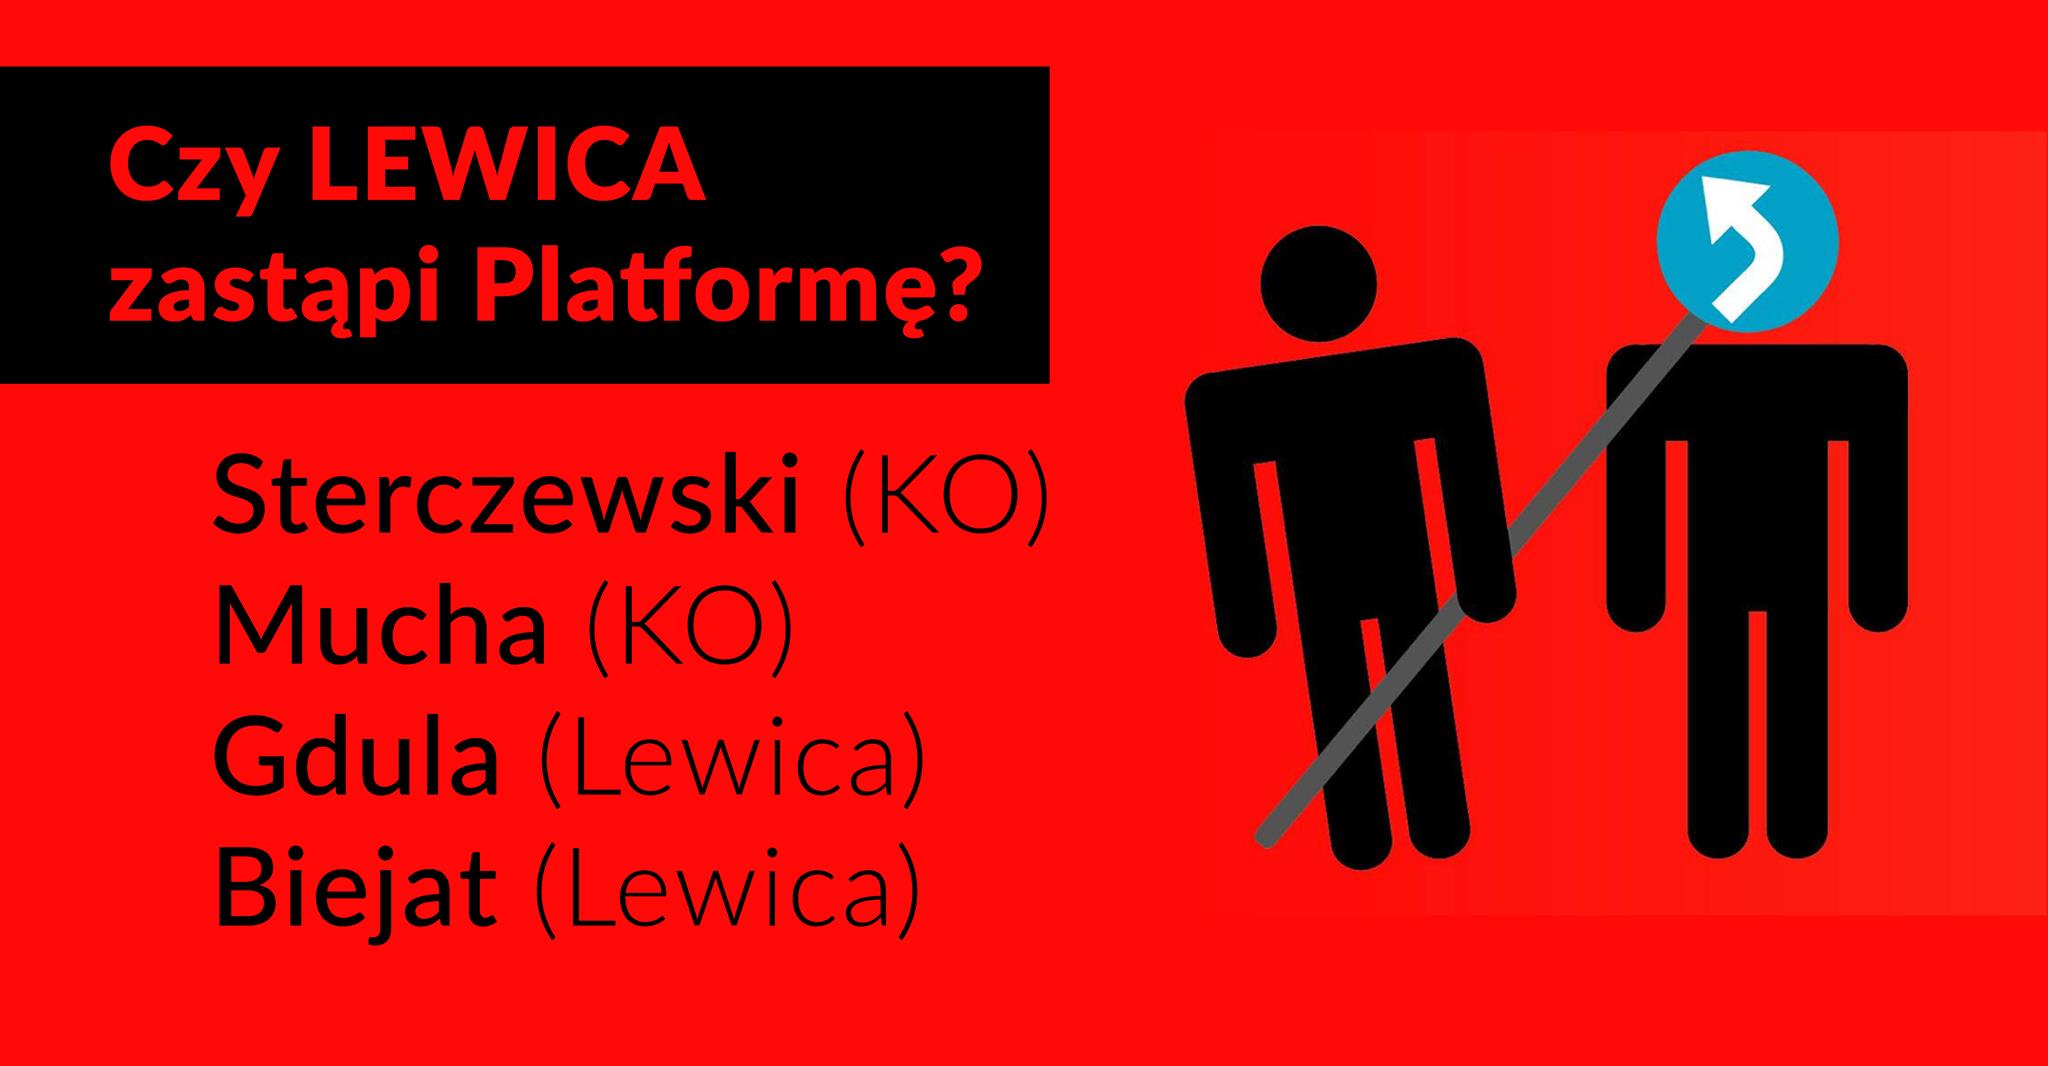 Czy Lewica zastąpi Platformę?